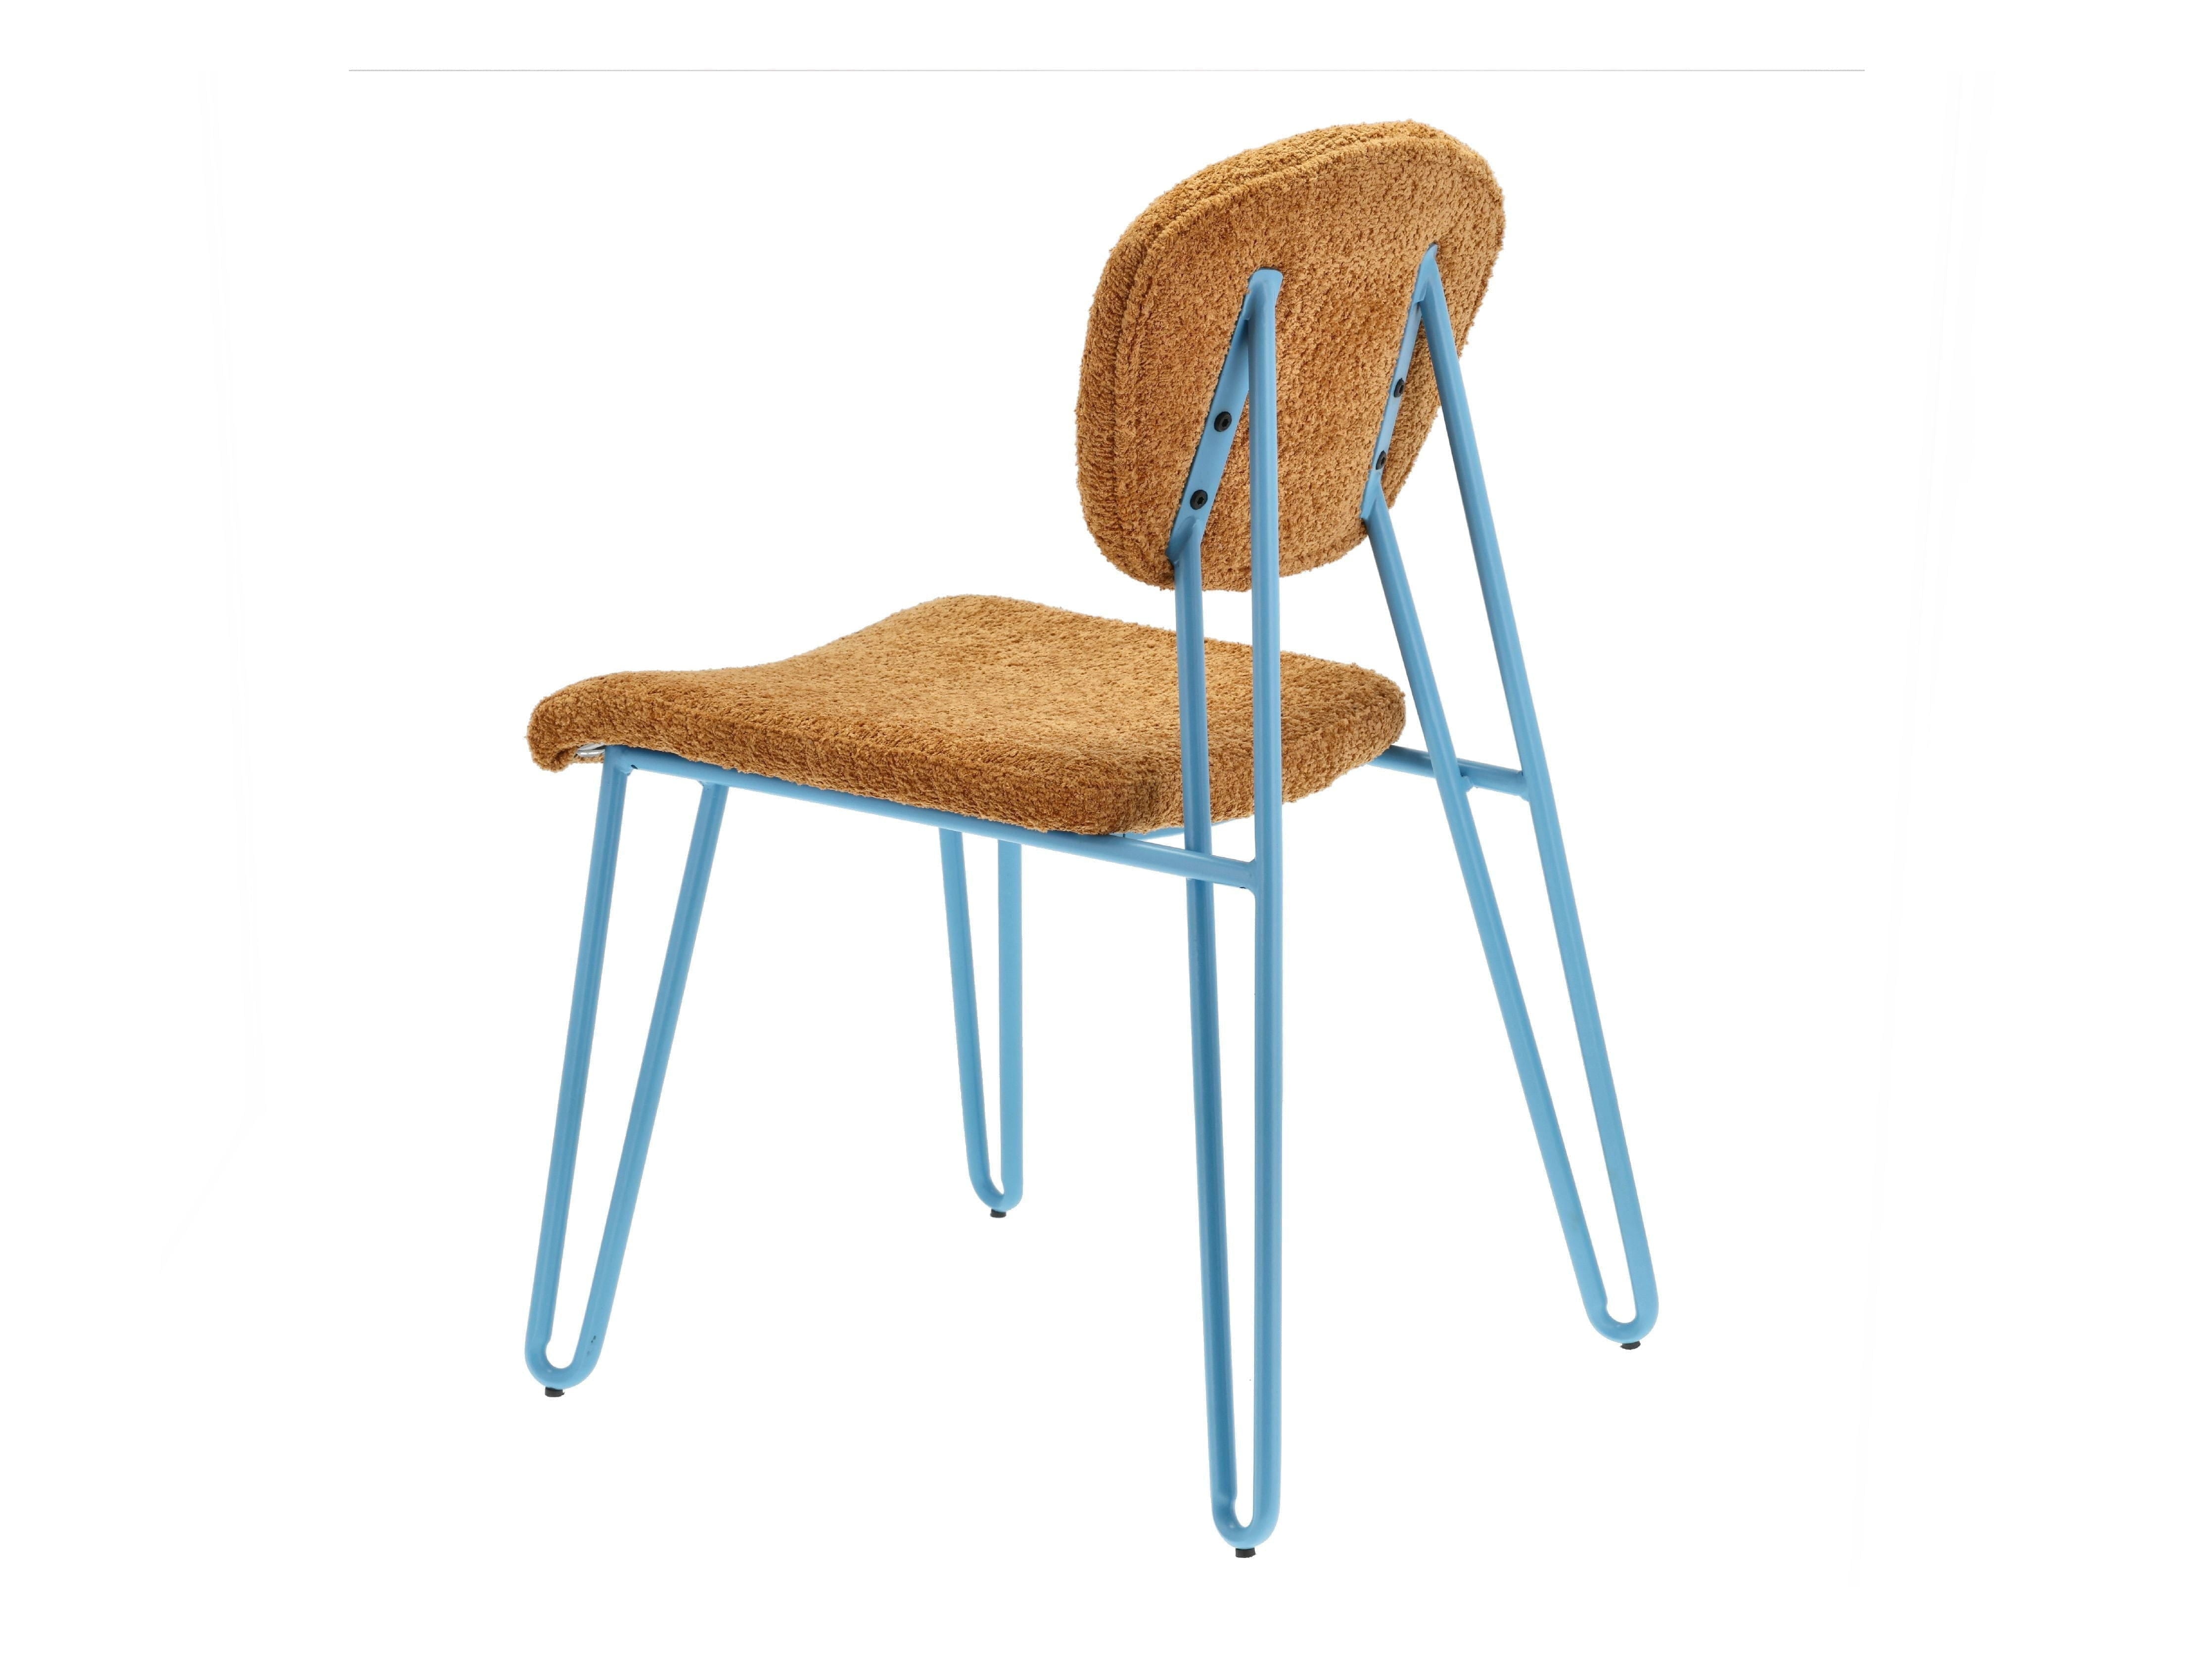 Villa samlingsstilar stol, blå/brun